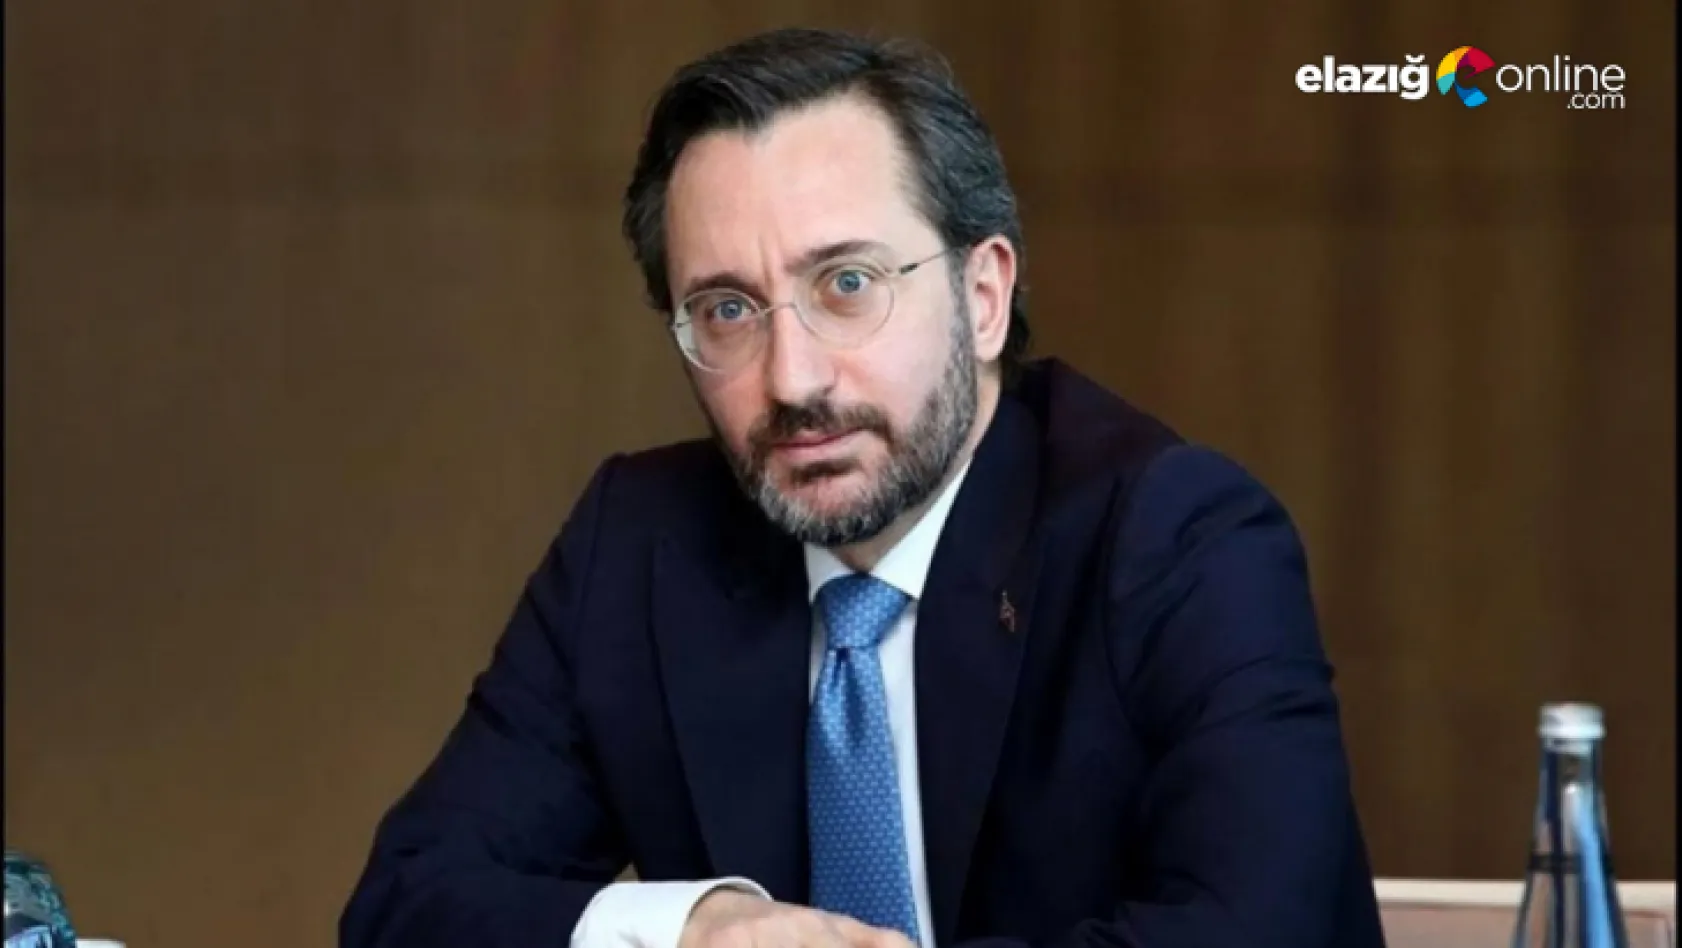 İletişim Başkanı Fahrettin Altun'dan bildiri açıklaması